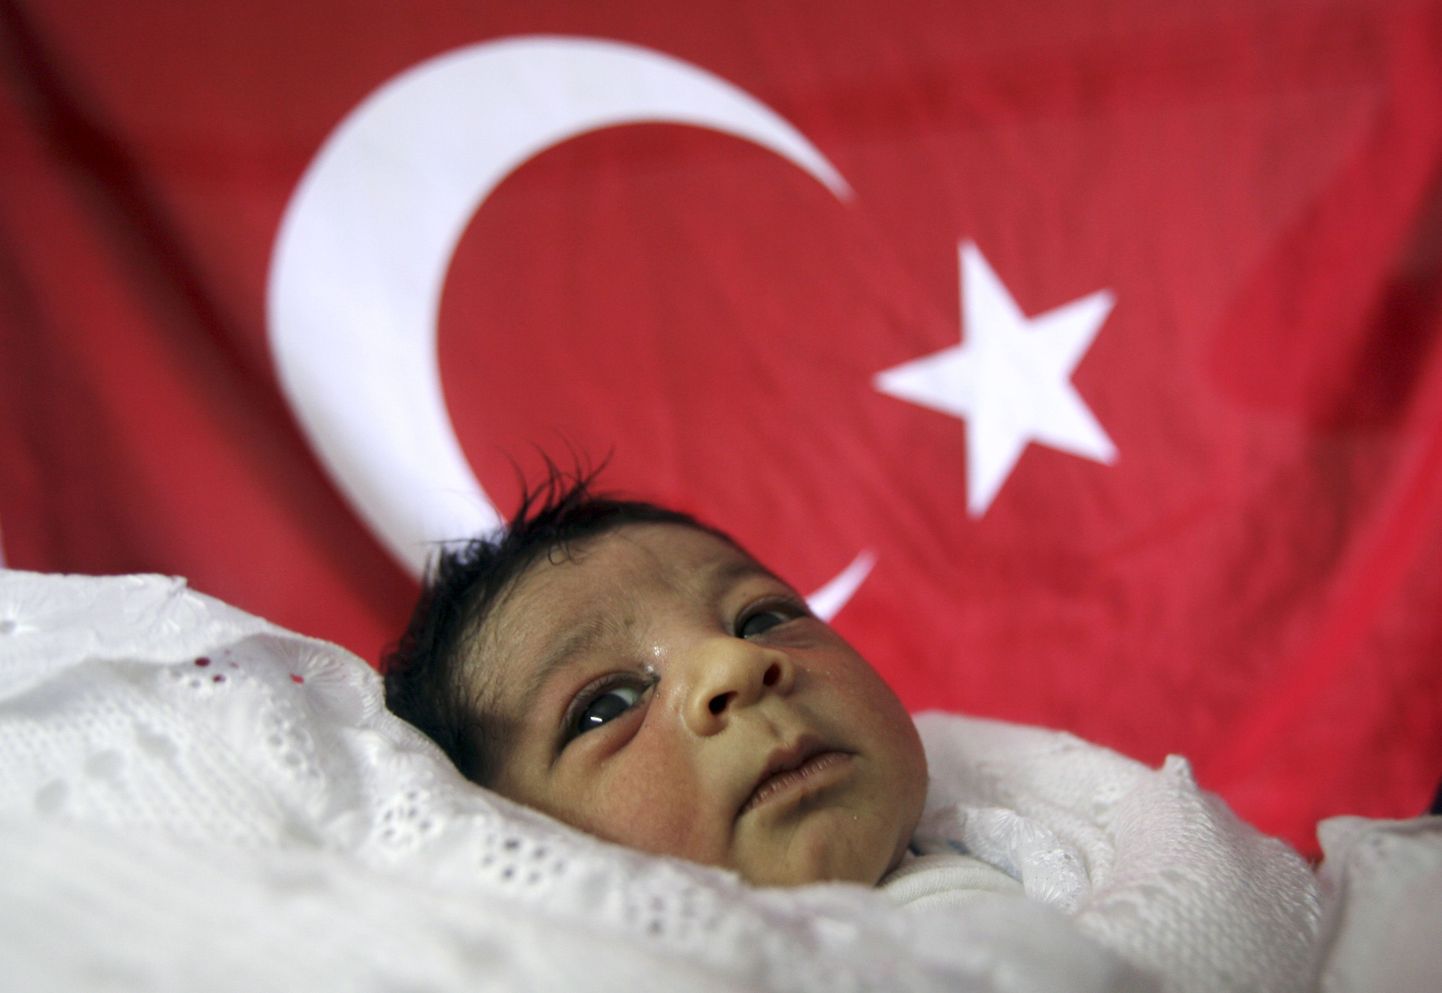 Türklaste sündimus on Saksamaal vähenenud